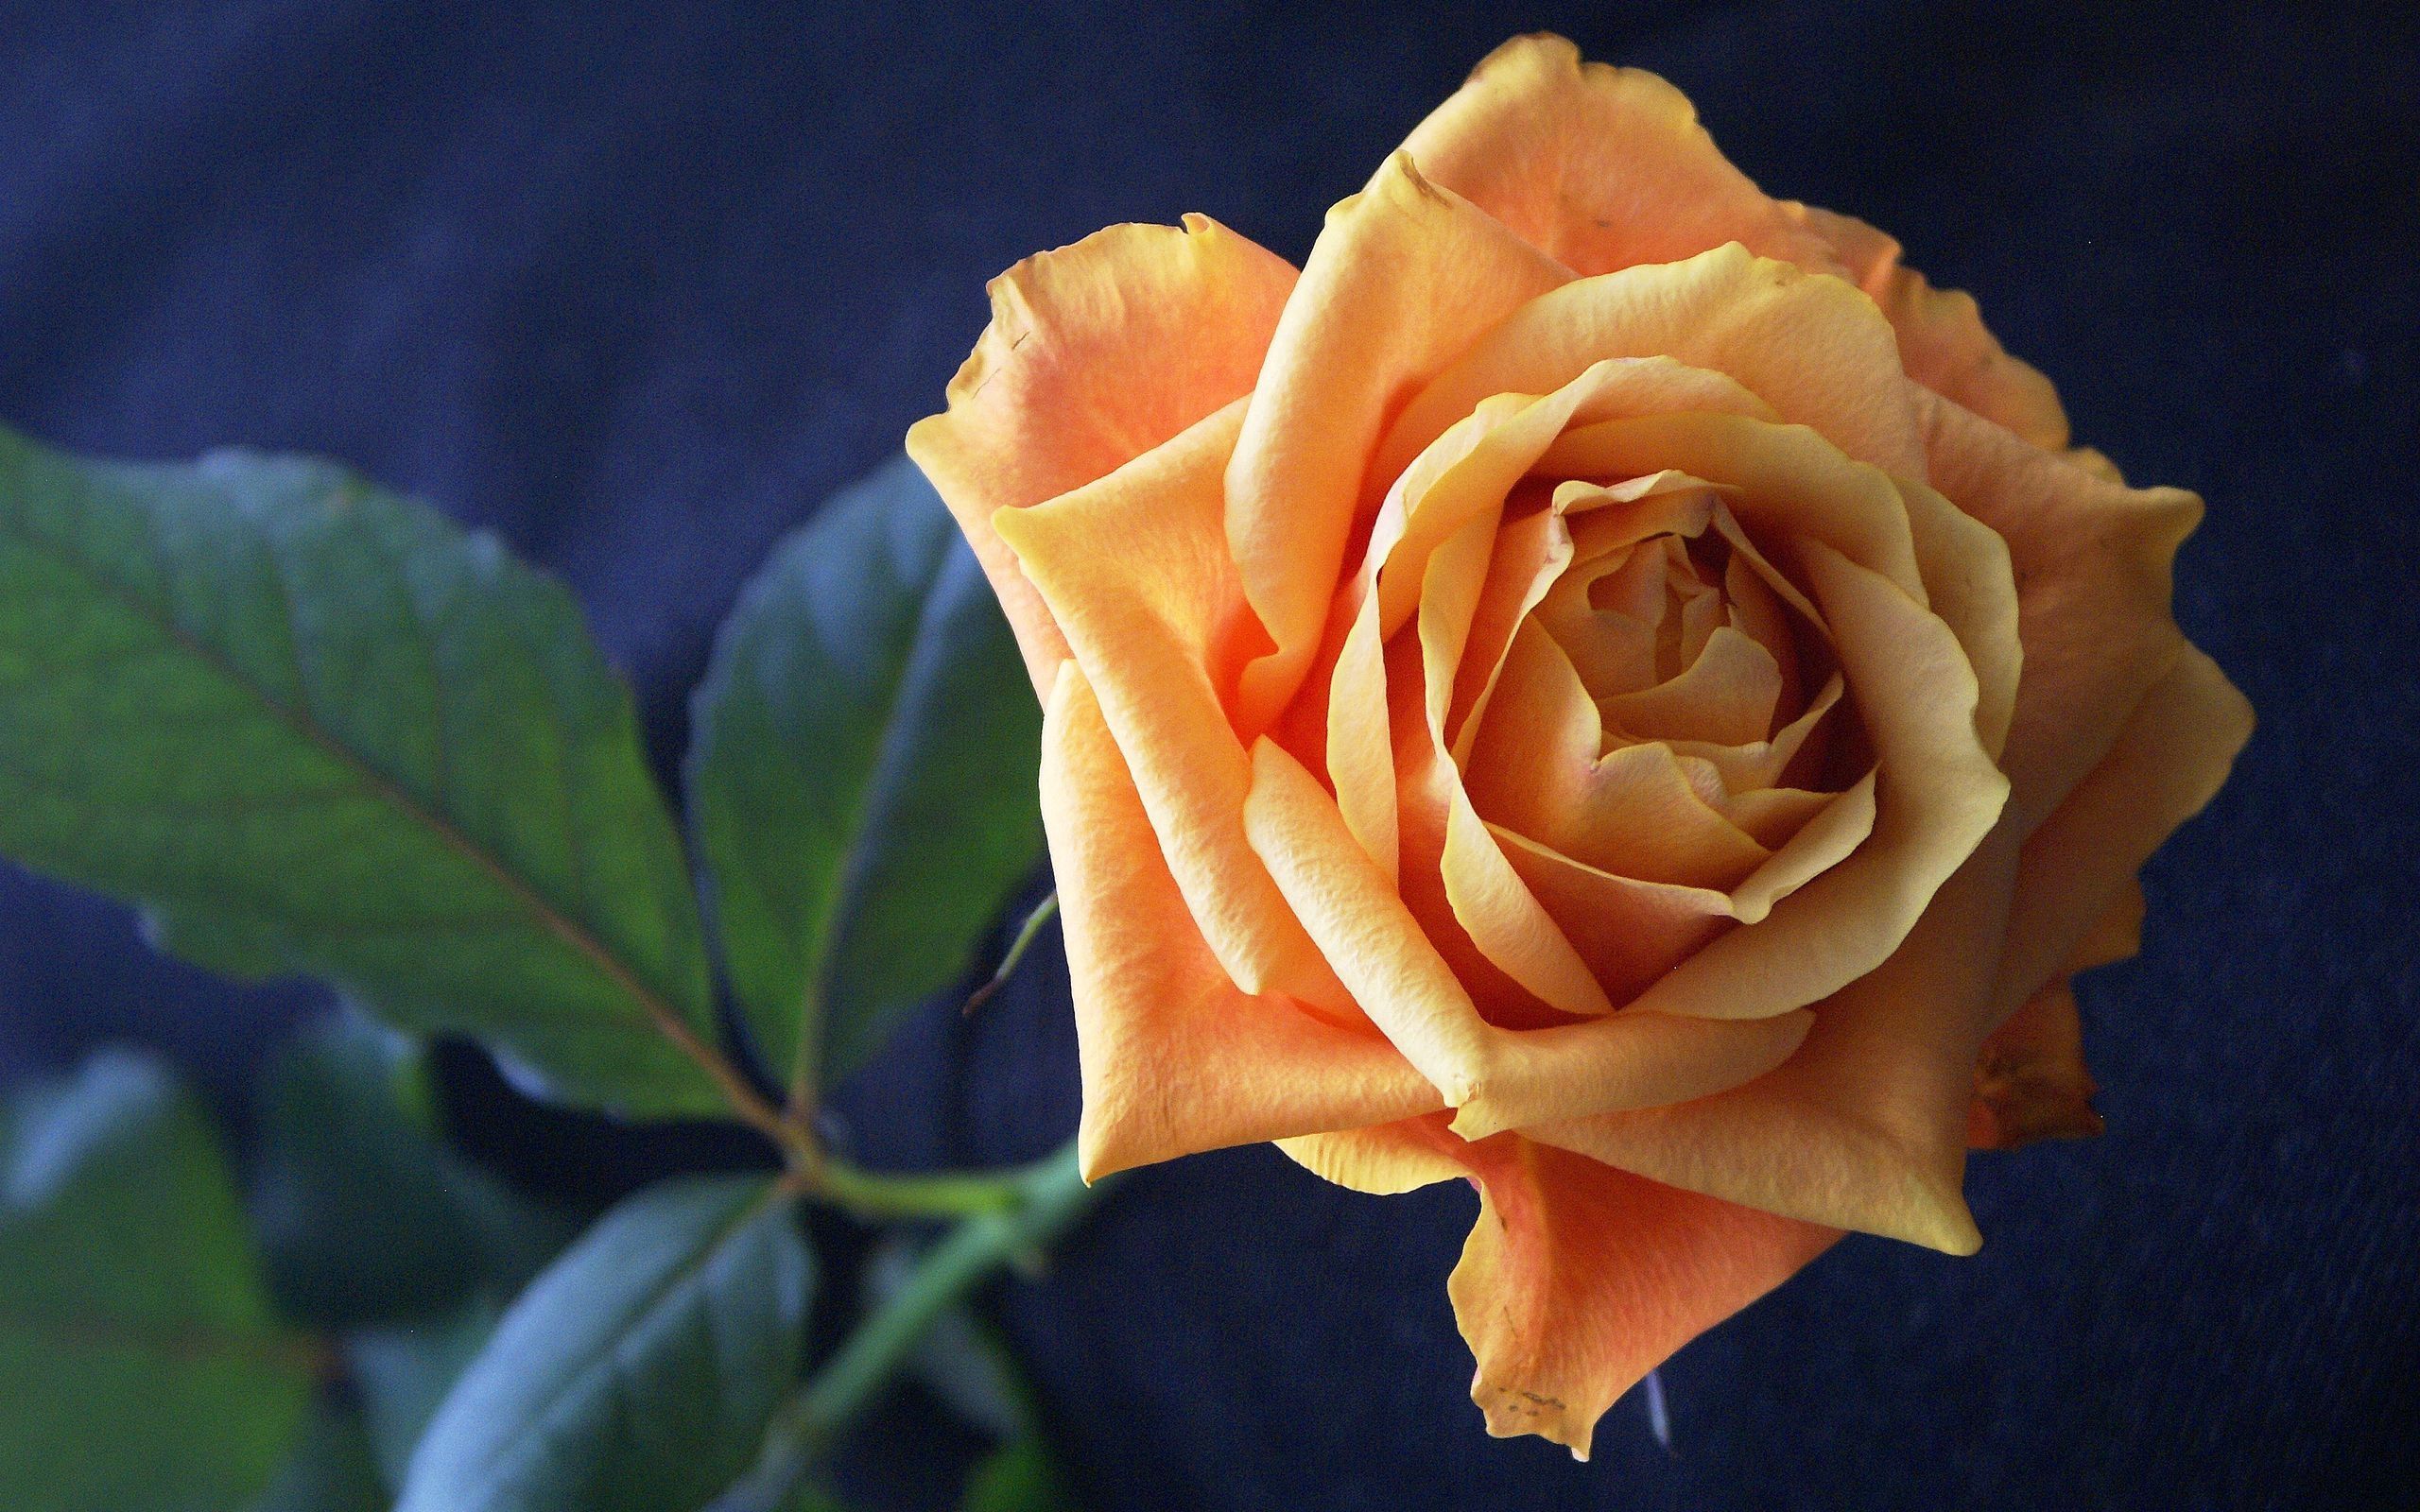 macro, rose flower, rose, petals, bud, stem, stalk Image for desktop